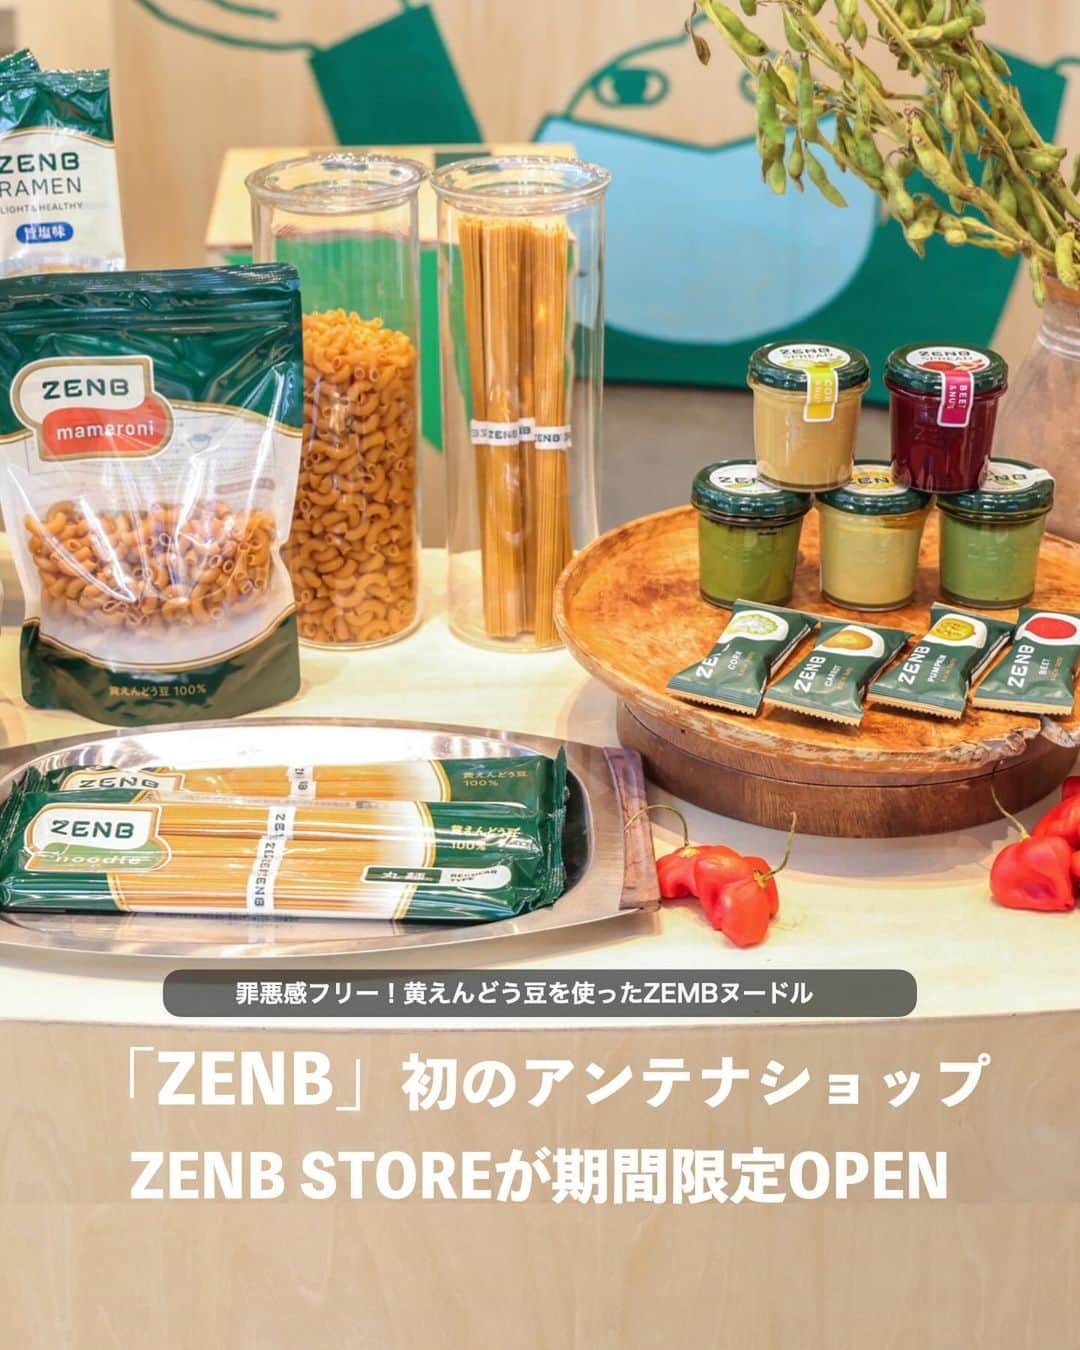 Locariのインスタグラム：「📣🫛ZENB 初のアンテナショップ「ZENB STORE」が期間限定オープン 🍝  「ZENB STORE」では、普段オンライン中心に販売する ZENB 商品をすべて購入できるだけでなく、累計販売食数 1,300 万食を突破した「ZENB ヌードル」をはじめとし、ZENB の人気商品の試食を週替わりで提供。  また、ZENB の魅力に共感する様々な分野のコラボレーターによるストア限定のスペシャルコンテンツも実施。手ぬぐい専門店「かまわぬ」の手ぬぐいをはじめとするオリジナルグッズや、旅する八百屋「青果ミコト屋」とのアイスサンド、奇跡のお弁当、幻 のロケ弁として SNS でも人気の「chioben」との弁当などのコラボメニューも販売予定！  【ZENB STORE】 @zenb_japan  ◼︎出店期間:2023 年 10 月 26 日(木)~11 月 9 日(木)  ◼︎営業時間:平日11:00-19:00 土日祝10:00-19:00  11 月 9 日のみ 17:00 閉店   ◼︎出店場所:代官山 T‐SITE GARDEN GALLERY(東京都渋谷区猿楽町 16-15)  ◼︎アクセス :東急東横線「代官山駅」より徒歩 5 分      #zenbnoodle #ゼンブヌードル #ゼンブ #代官山tsite #ポップアップストア #期間限定ショップ #グルテンフリー生活 #グルテンフリーパスタ #無添加食品 #無添加生活 #プラントベースフード #プラントベース #ダイエット飯 #ヘルシーフード #代官山蔦屋書店」